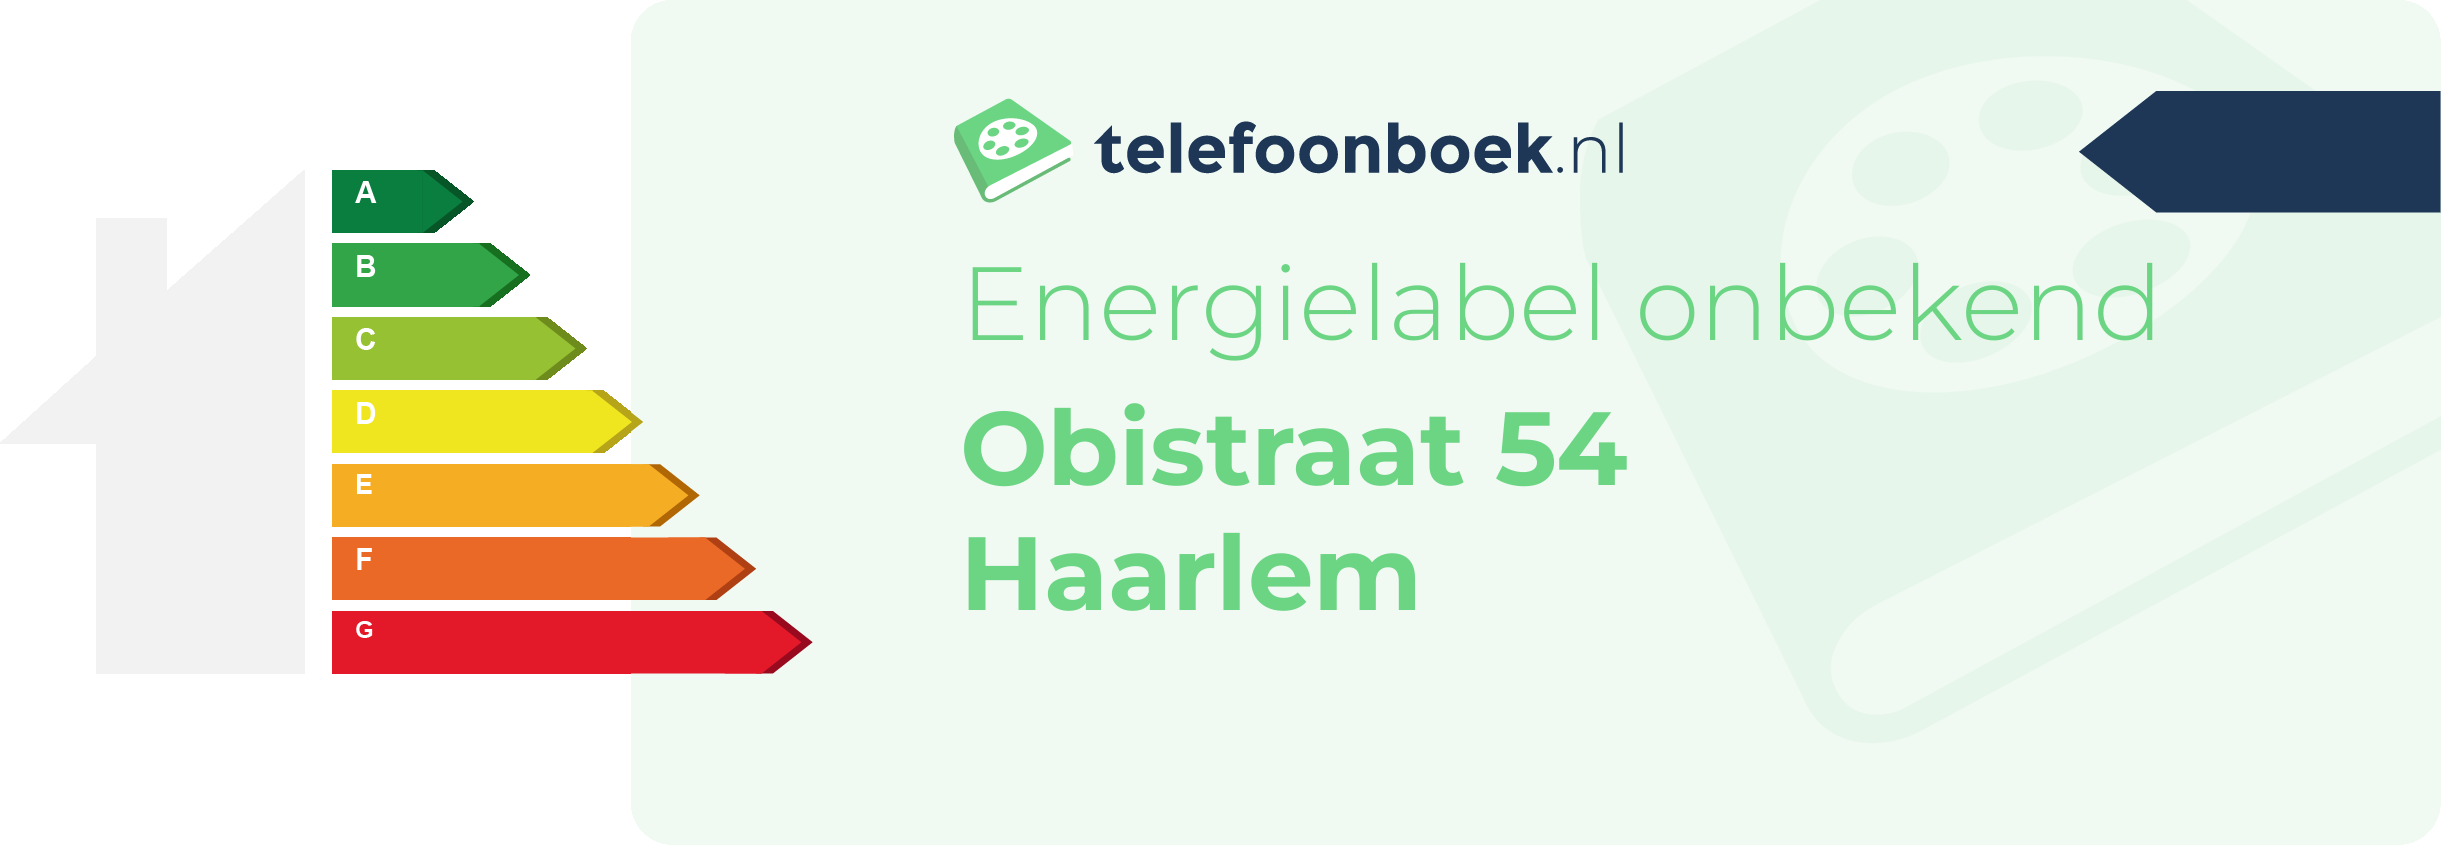 Energielabel Obistraat 54 Haarlem